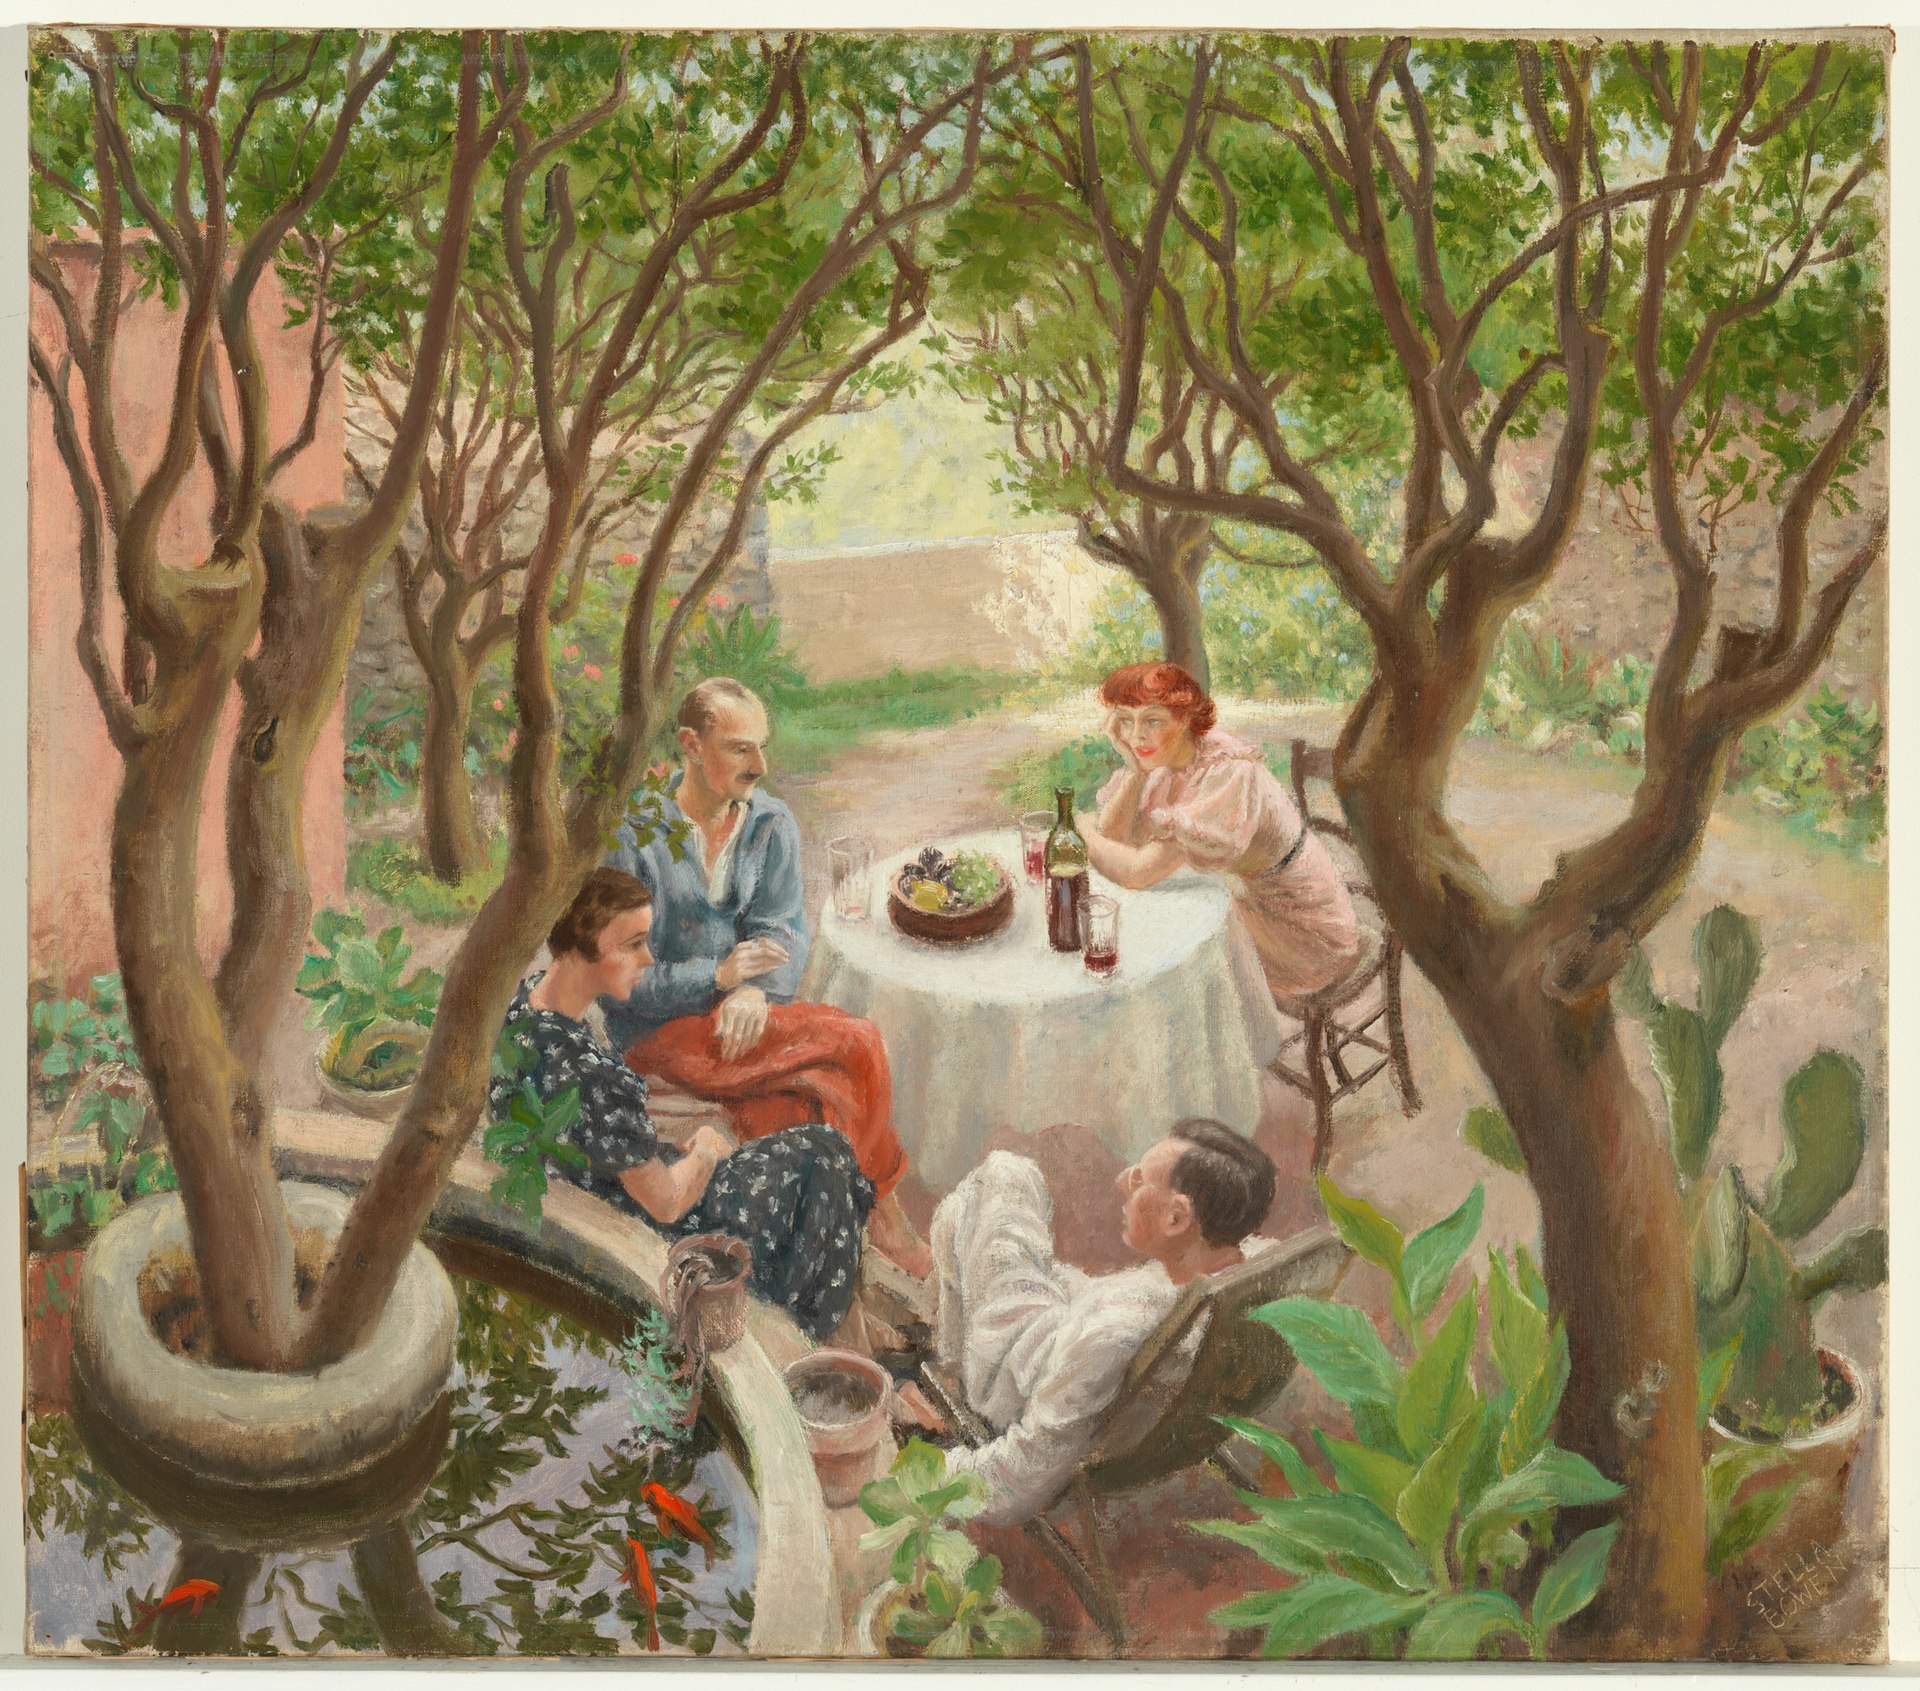 Conversación provenzal, Cagnes-sur-Mer by Stella Bowen - 1936 - 63,7 x 72,3 cm Colección privada